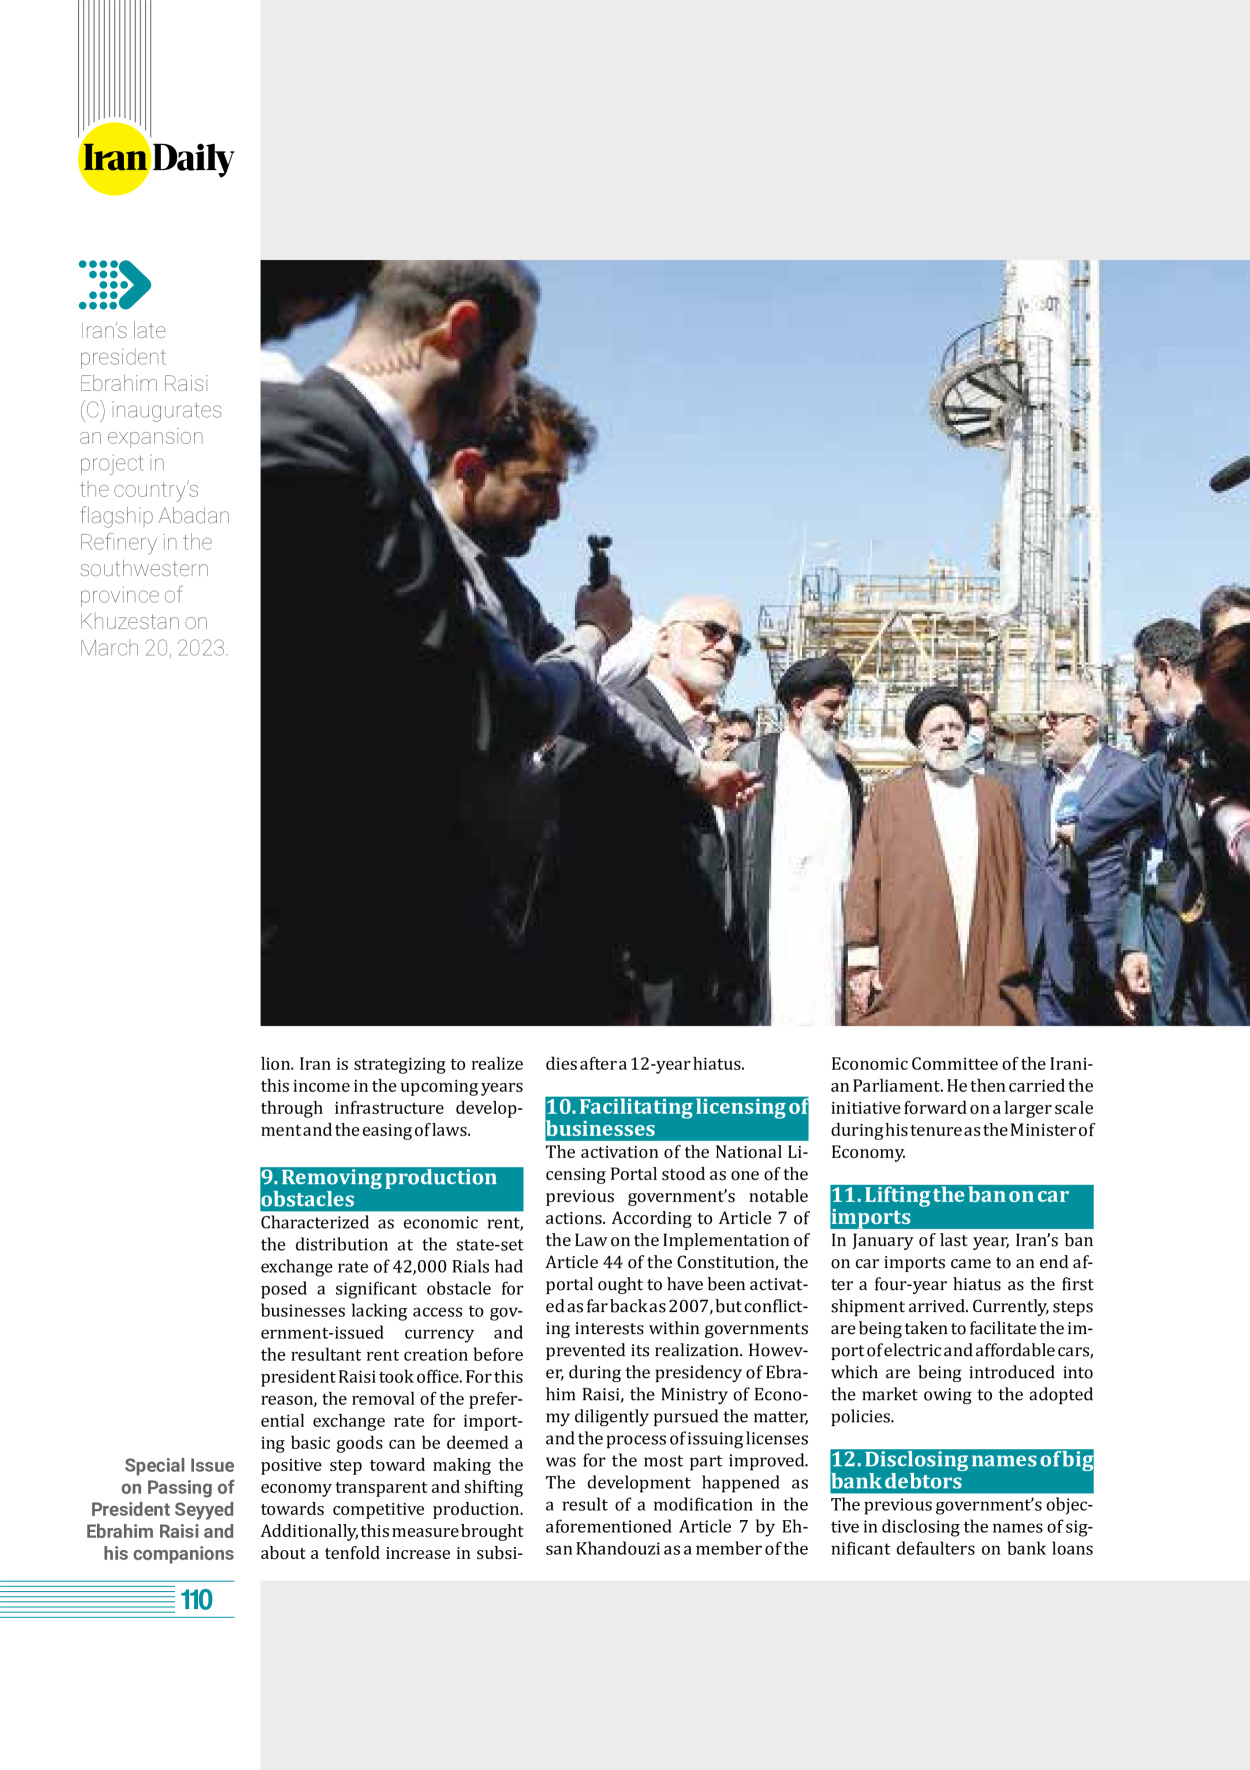 روزنامه ایران - ویژه نامه وِزه نامه چهلم شهید رییسی( انگلیسی) - ۱۷ تیر ۱۴۰۳ - صفحه ۱۱۰